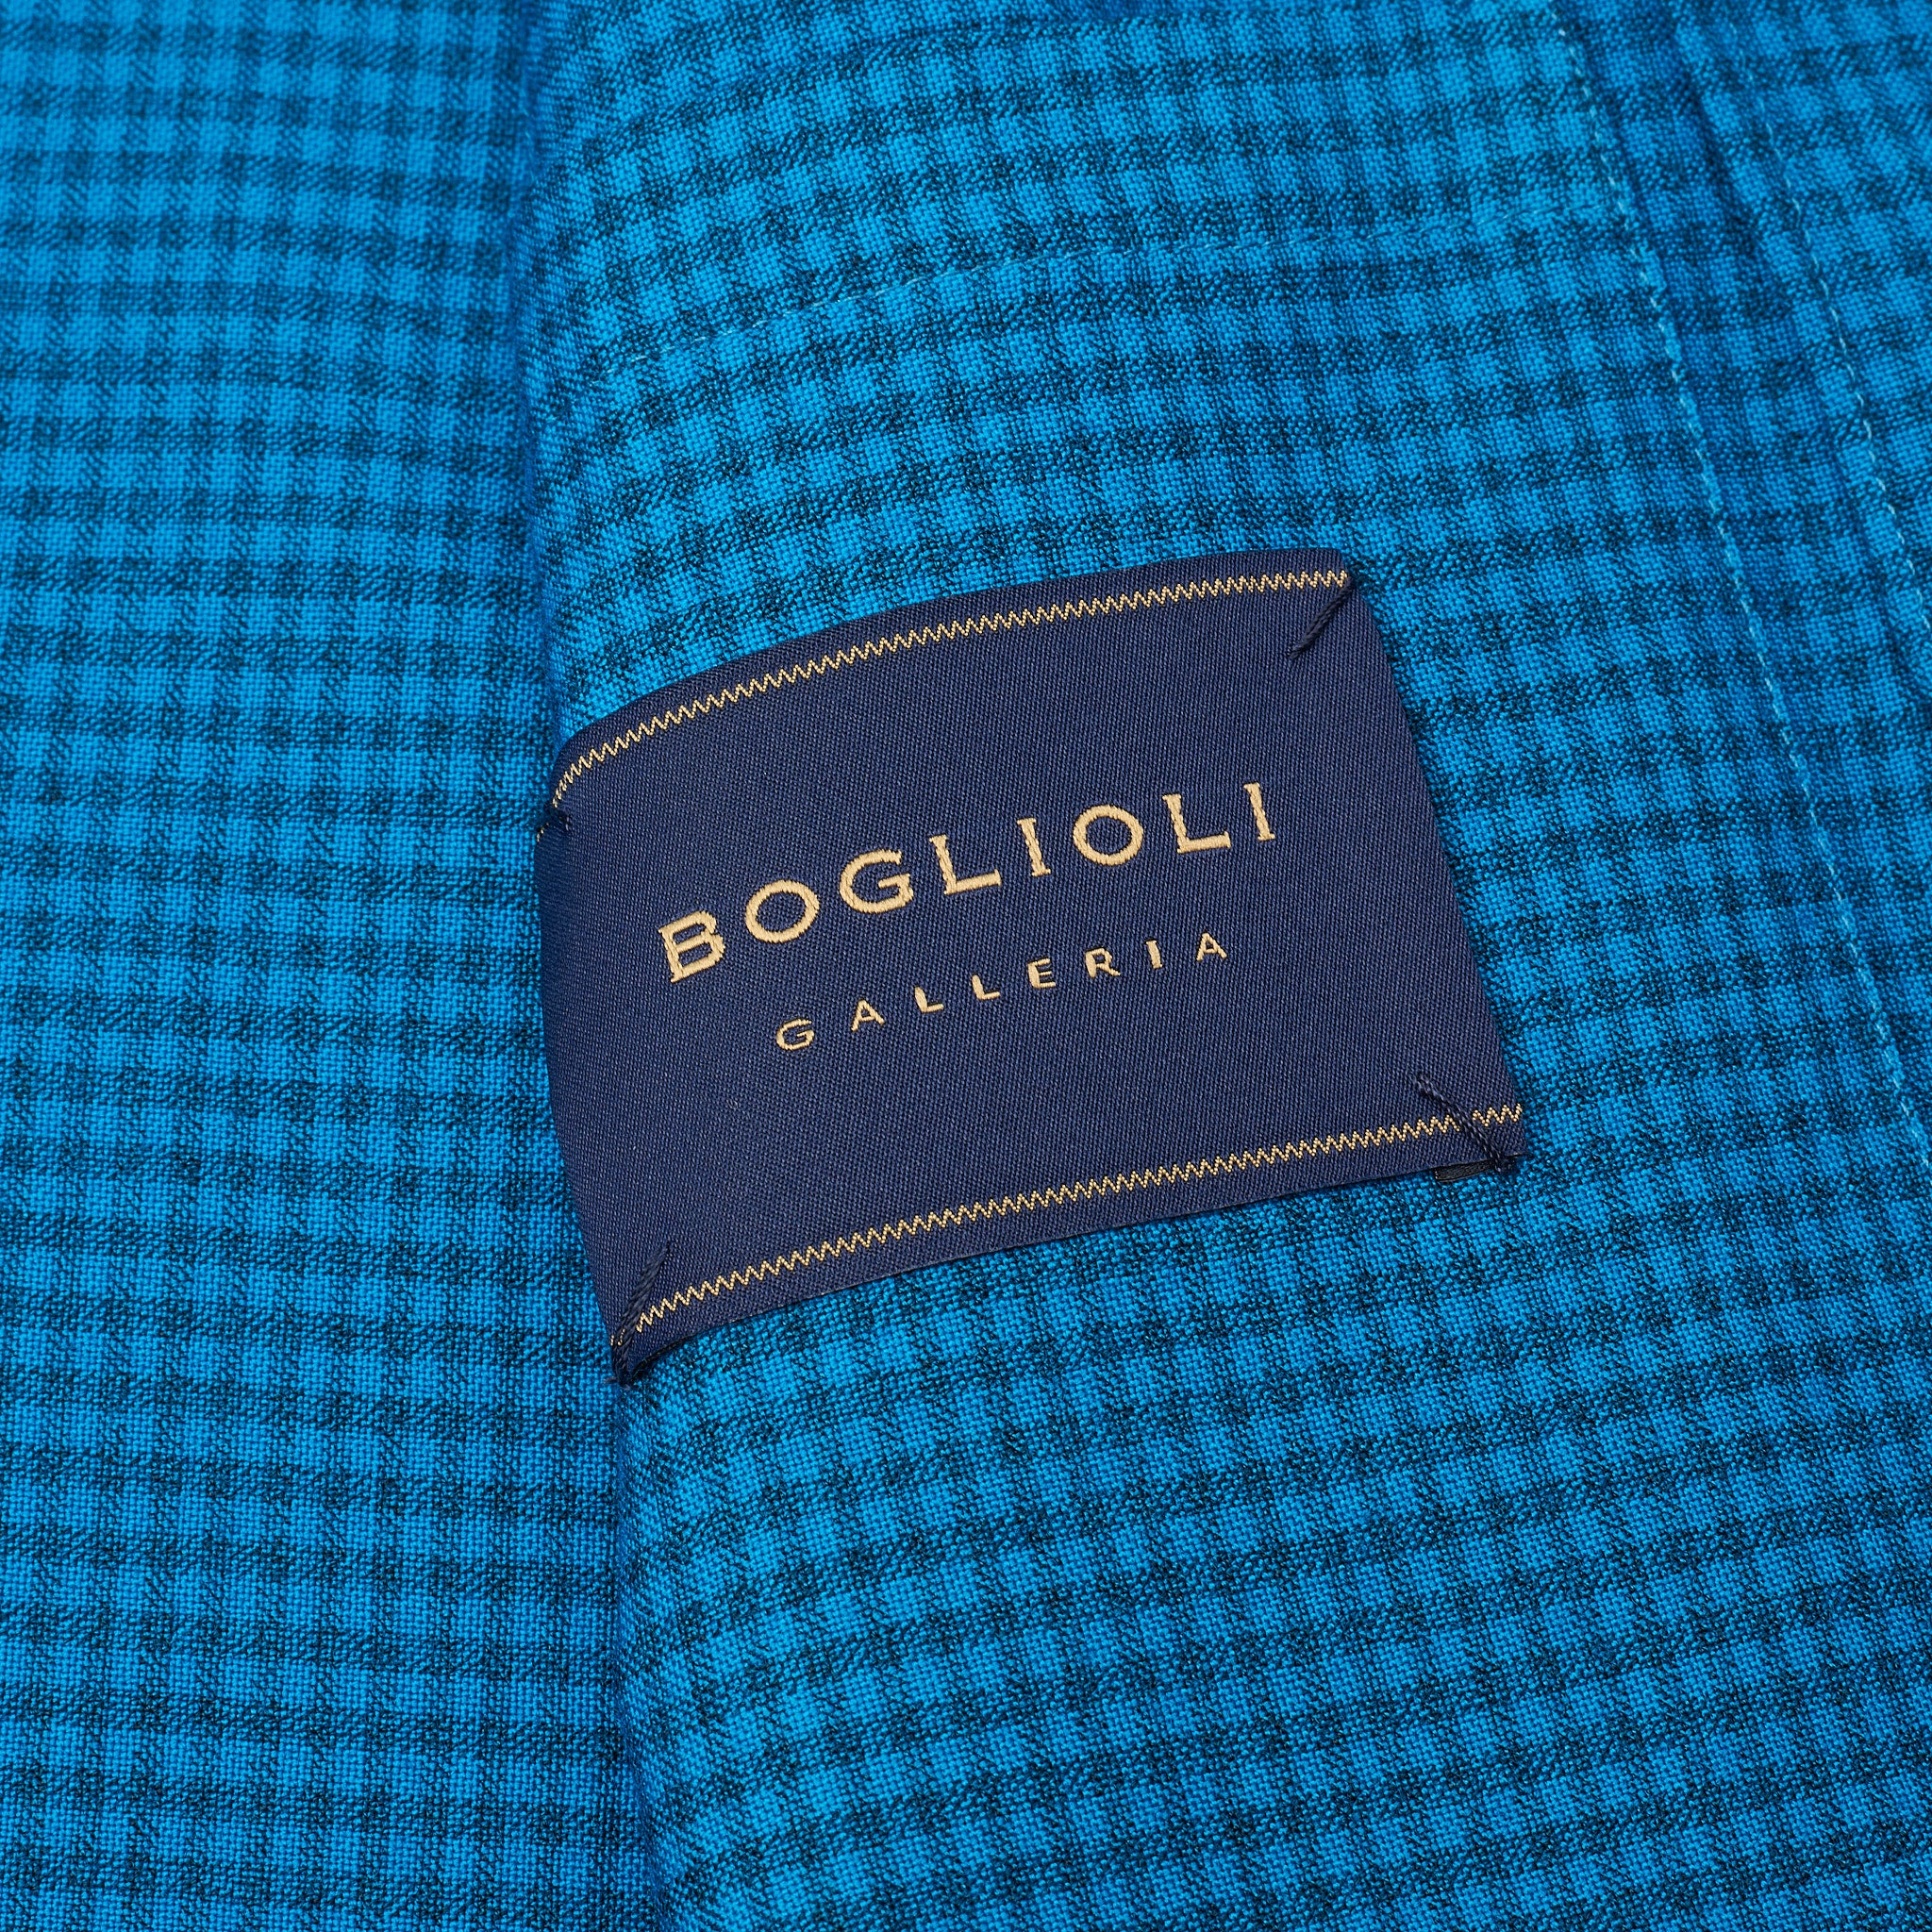 BOGLIOLI Galleria "72" Blue Plaid Wool Unconstructed Jacket EU 48 NEW US 38